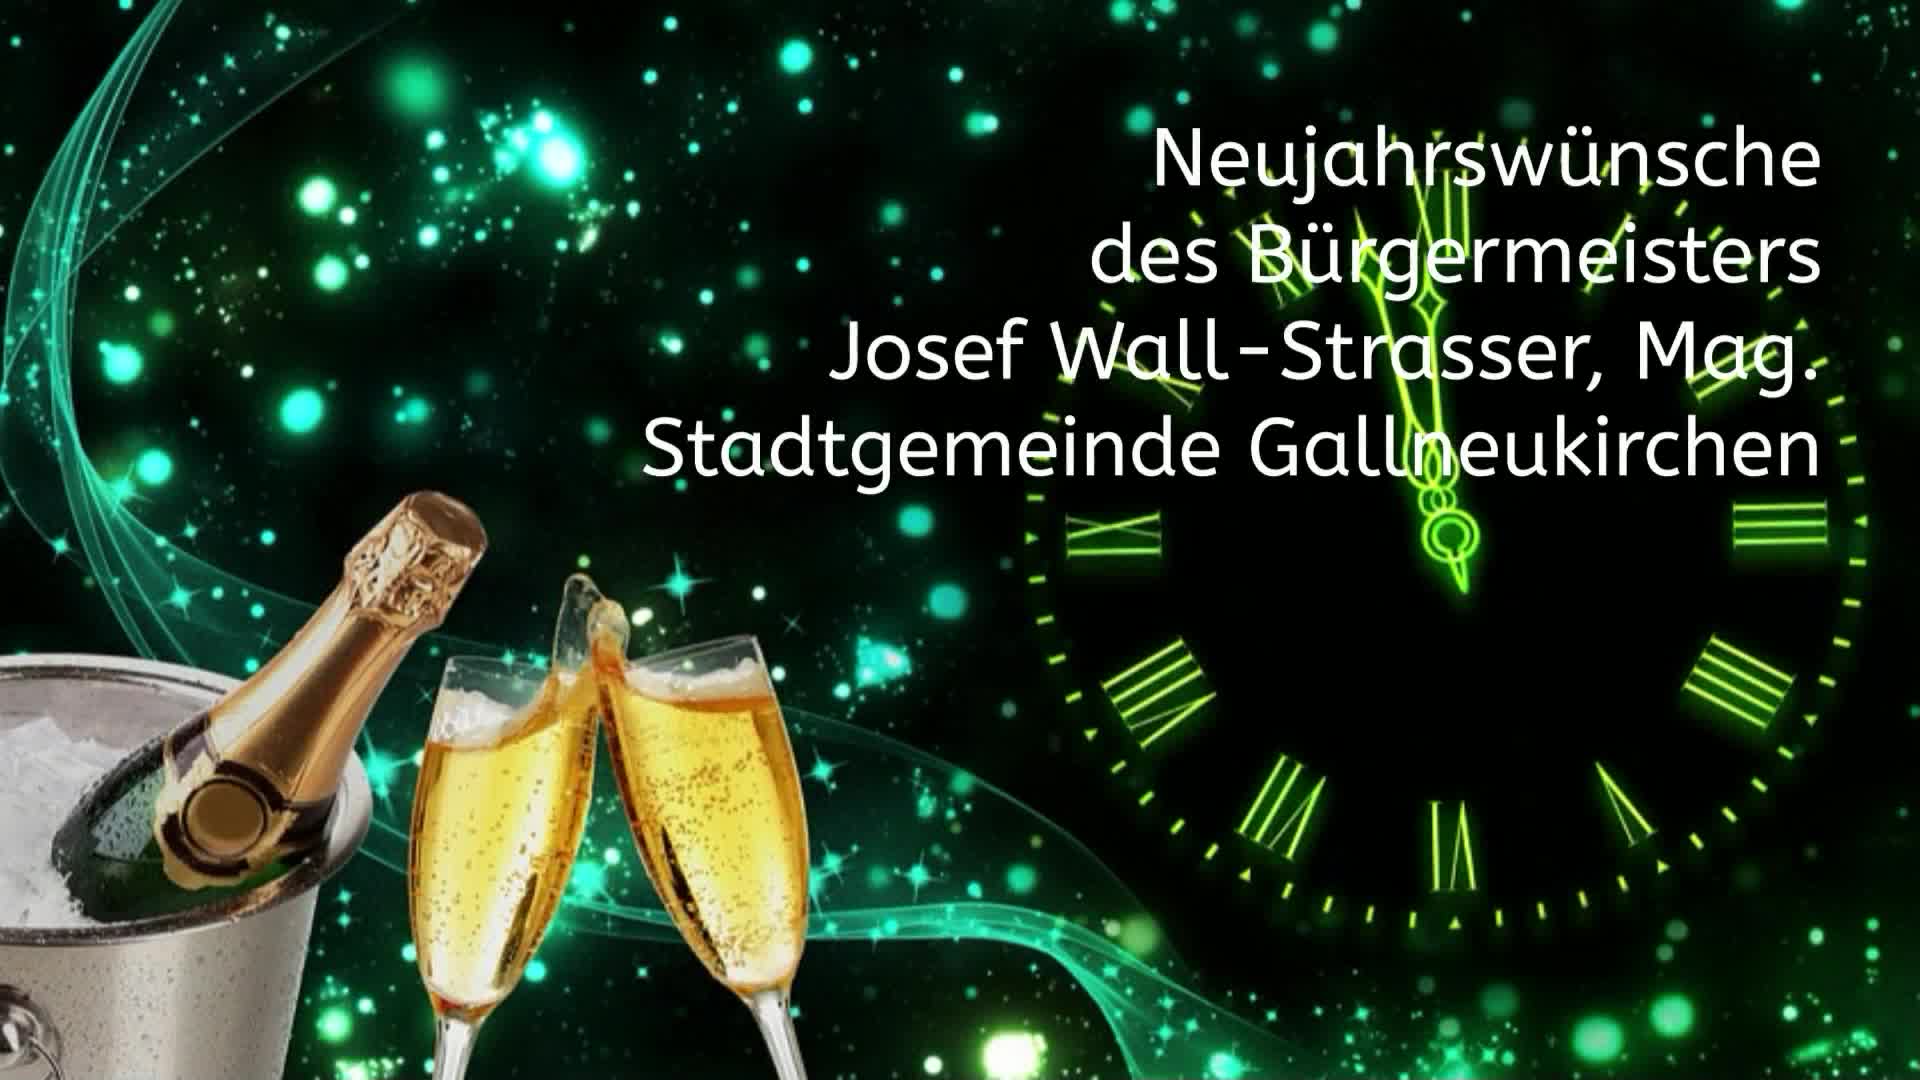 Neujahrswünsche d. Gallneukirchner Bügermeister Josef Wall-Strasser